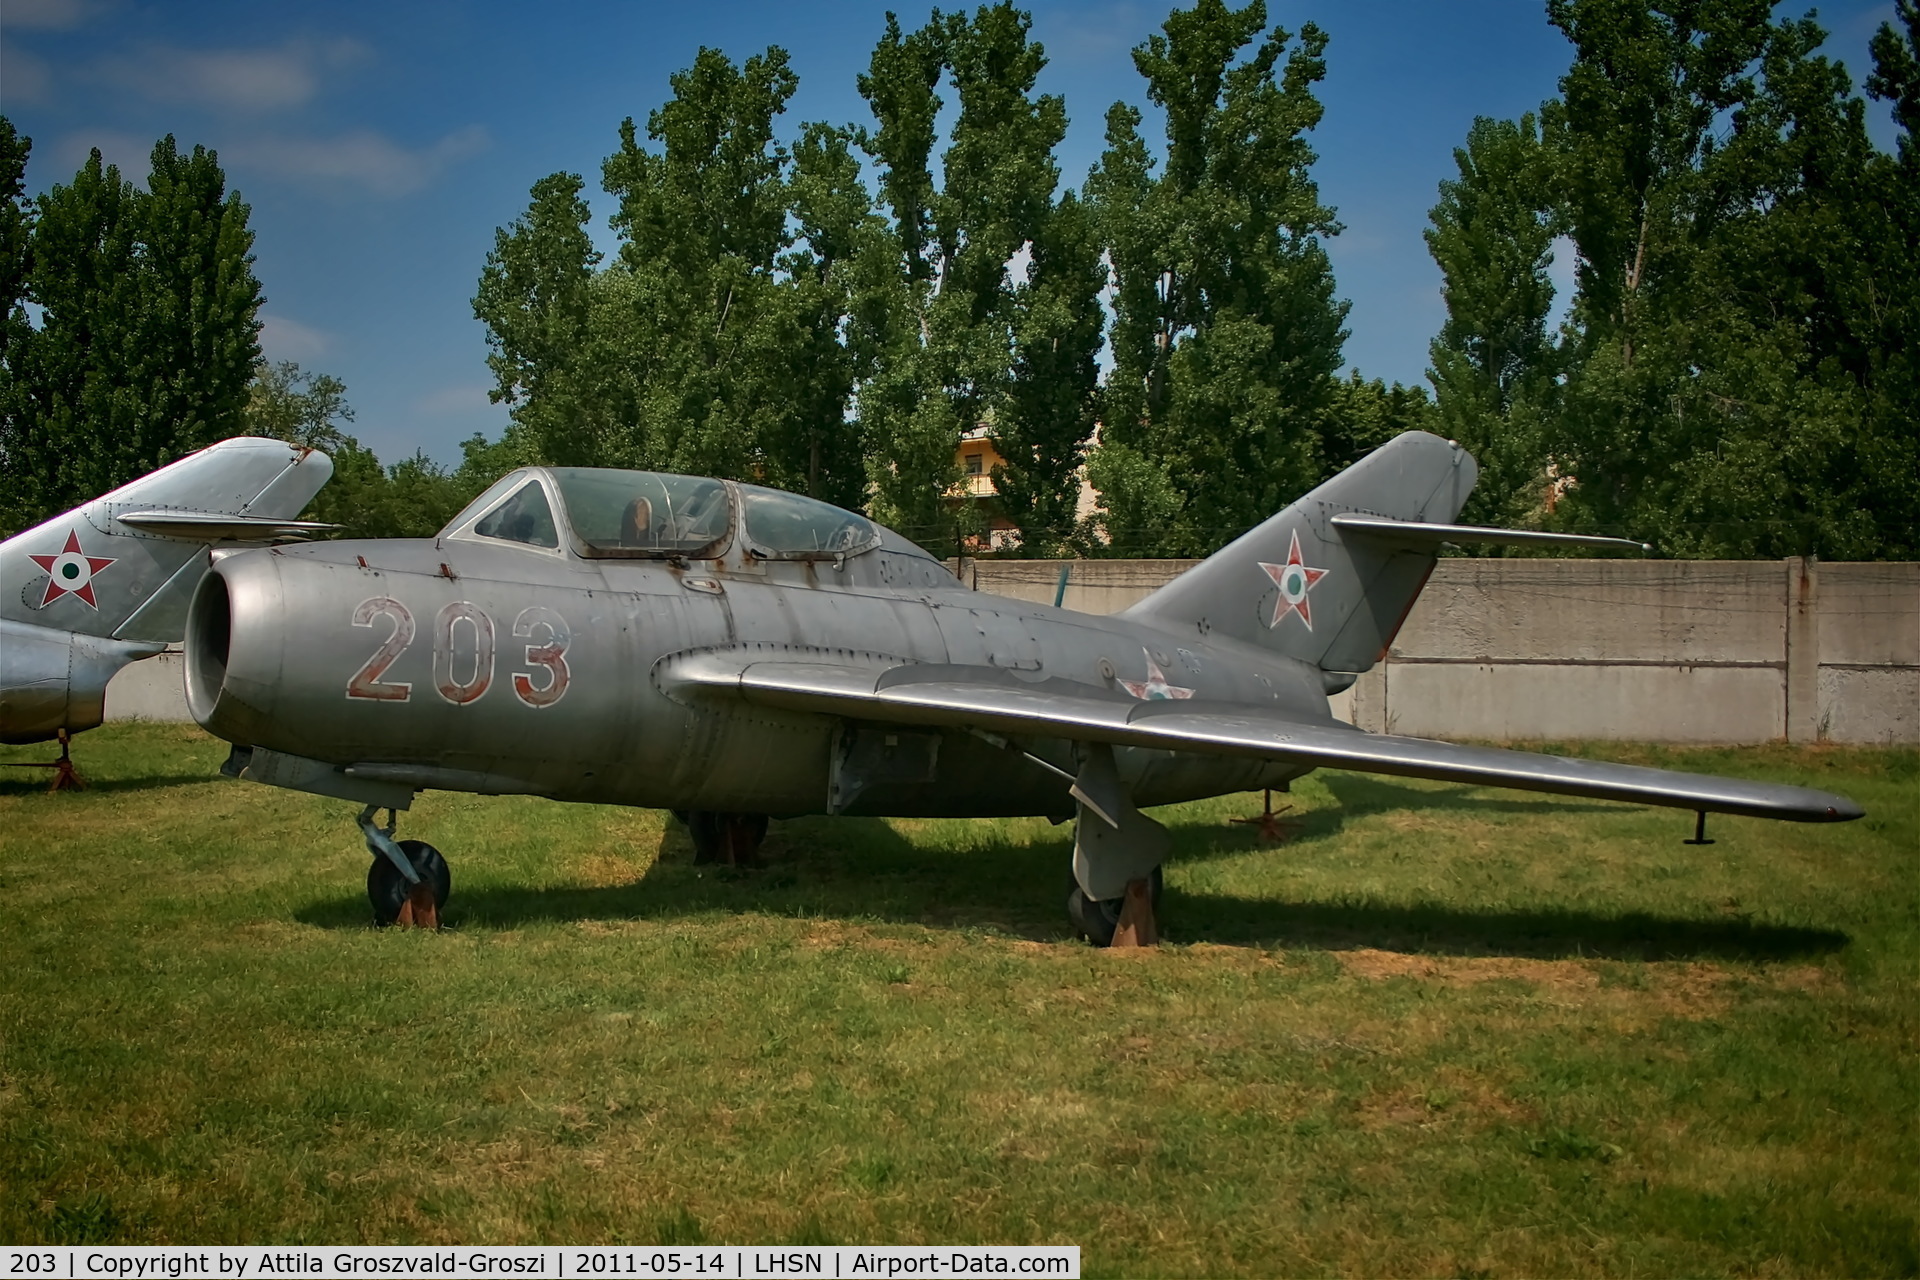 203, 1955 Mikoyan-Gurevich MiG-15UTI C/N 10993203, LHSN - Szolnok-Szandaszölös Airplane Museum